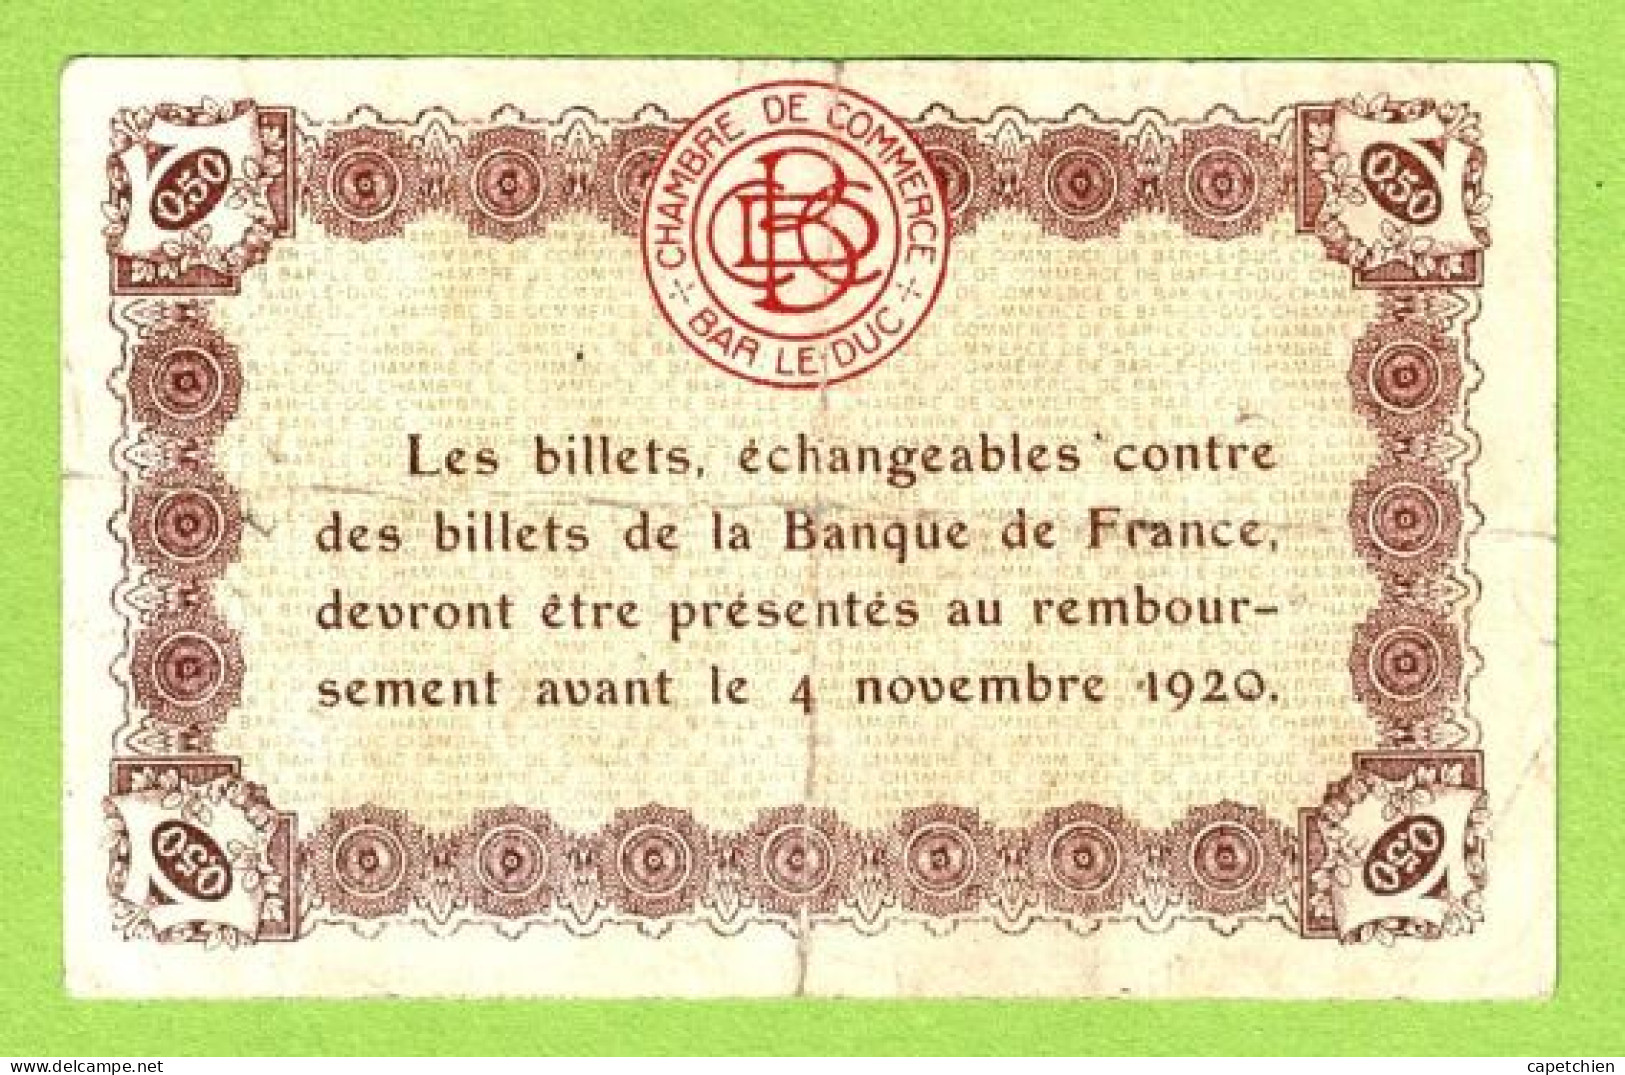 FRANCE / CHAMBRE DE COMMERCE / BAR LE DUC / 50 CENTIMES /  2 AOUT 1917  / 3ème EMISSION / N° 47255 - Cámara De Comercio